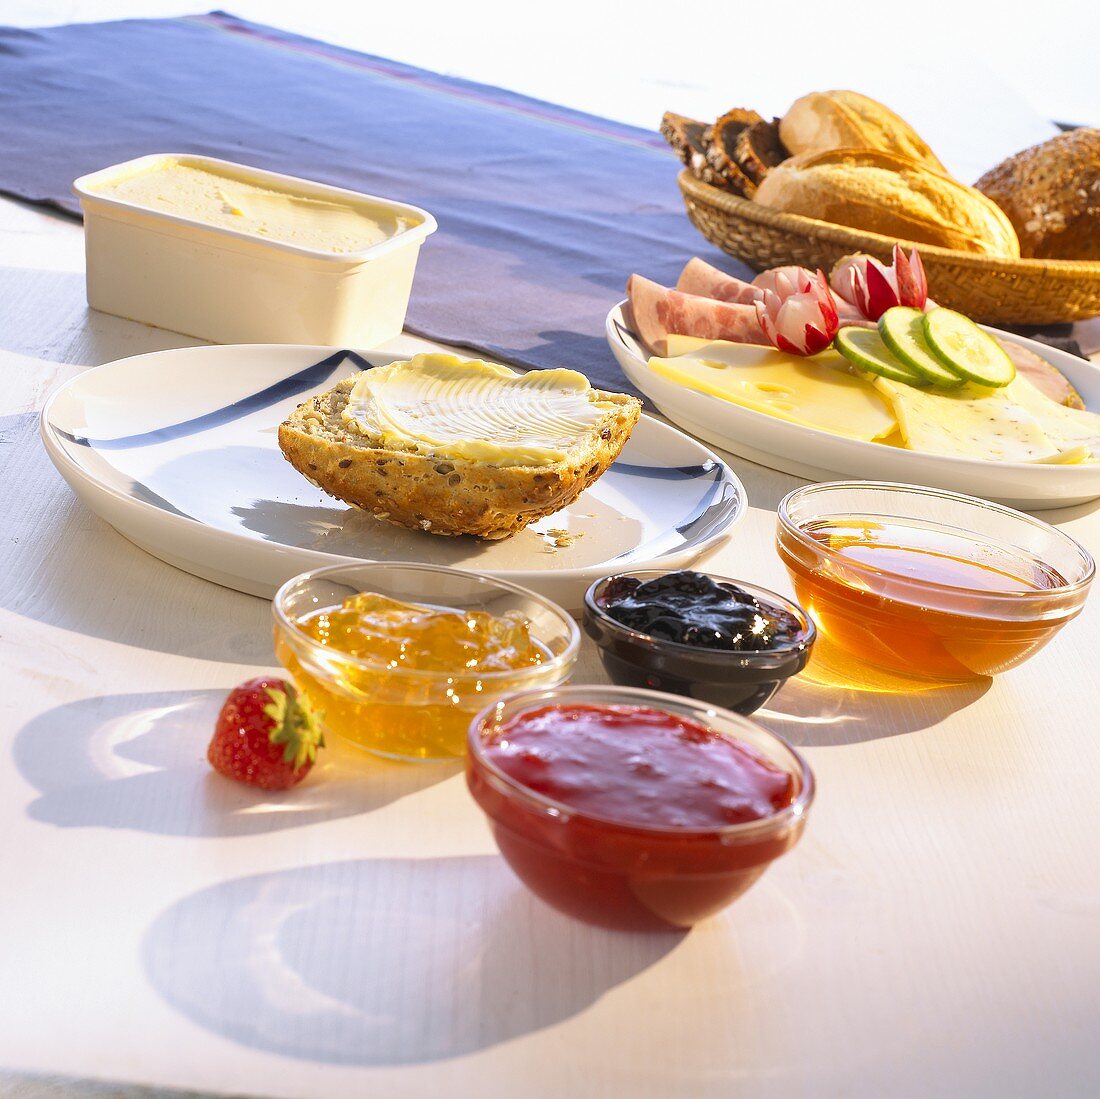 Frühstück mit Marmelade, Wurst, Käse und einem Korb voller Brötchen